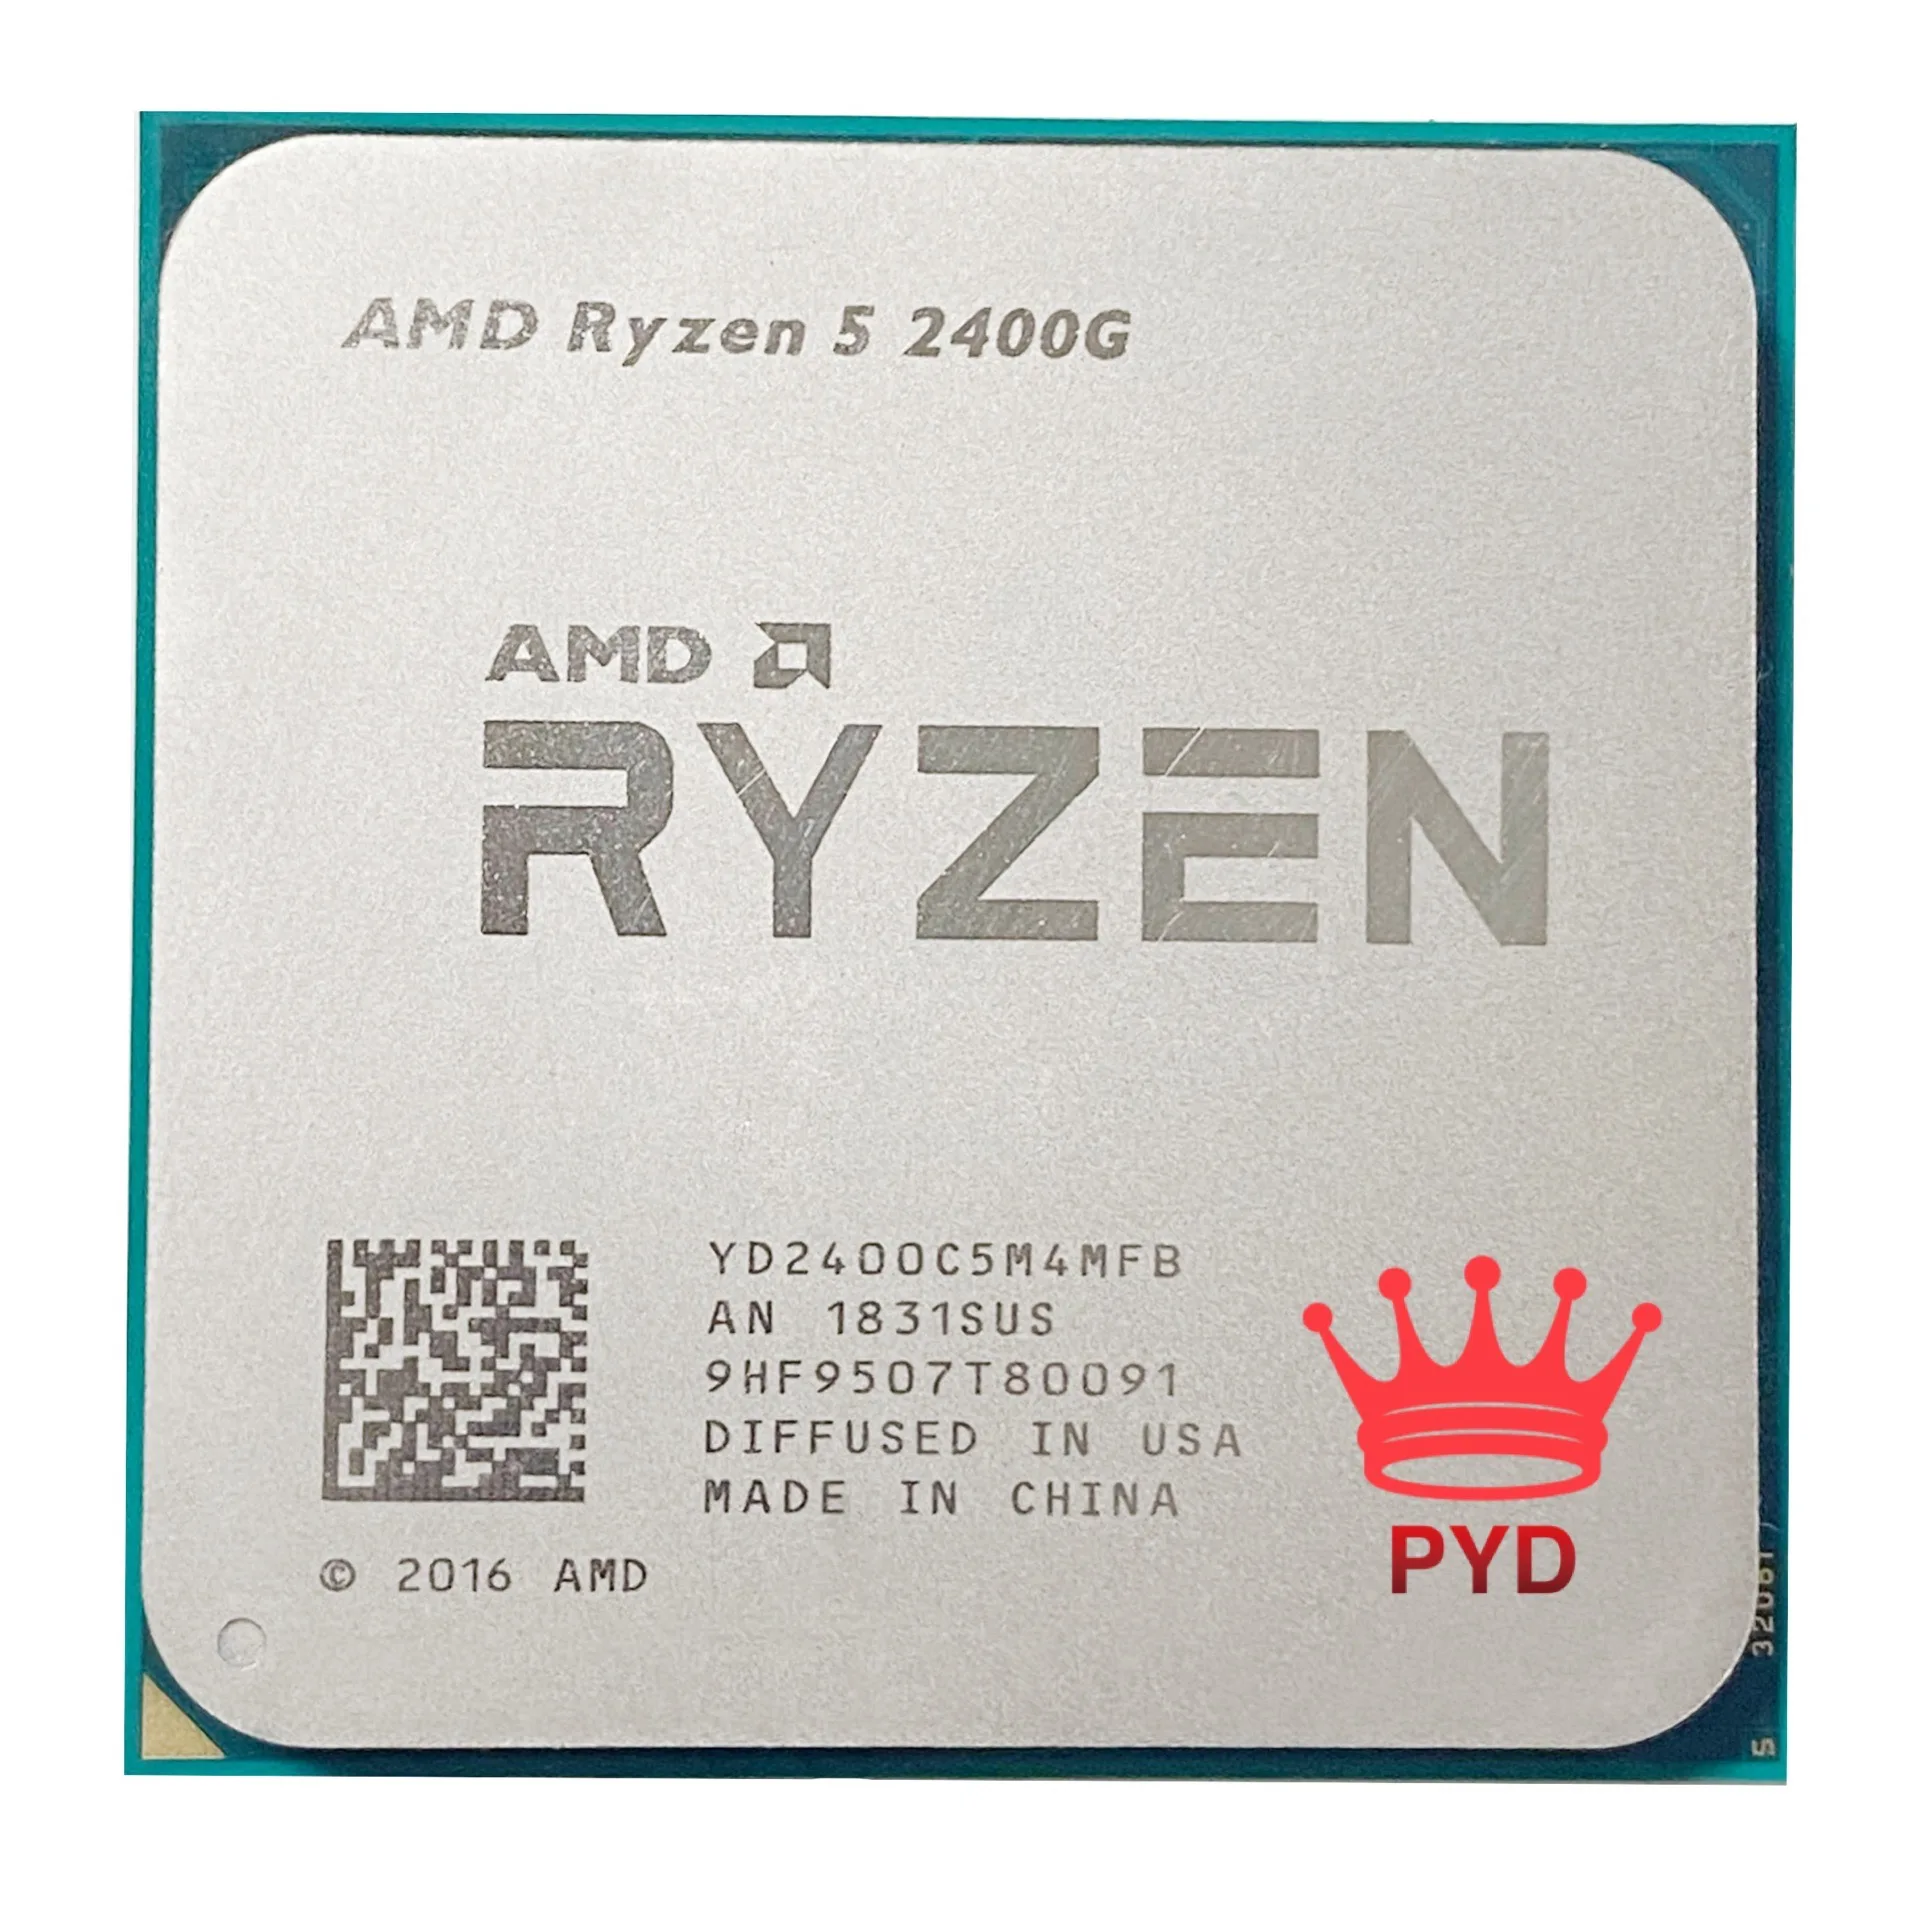 

AMD Ryzen 5 2400G R5 2400G 3,6 ГГц четырехъядерный четырехпоточный процессор 65 Вт YD2400C5M4MFB разъем AM4